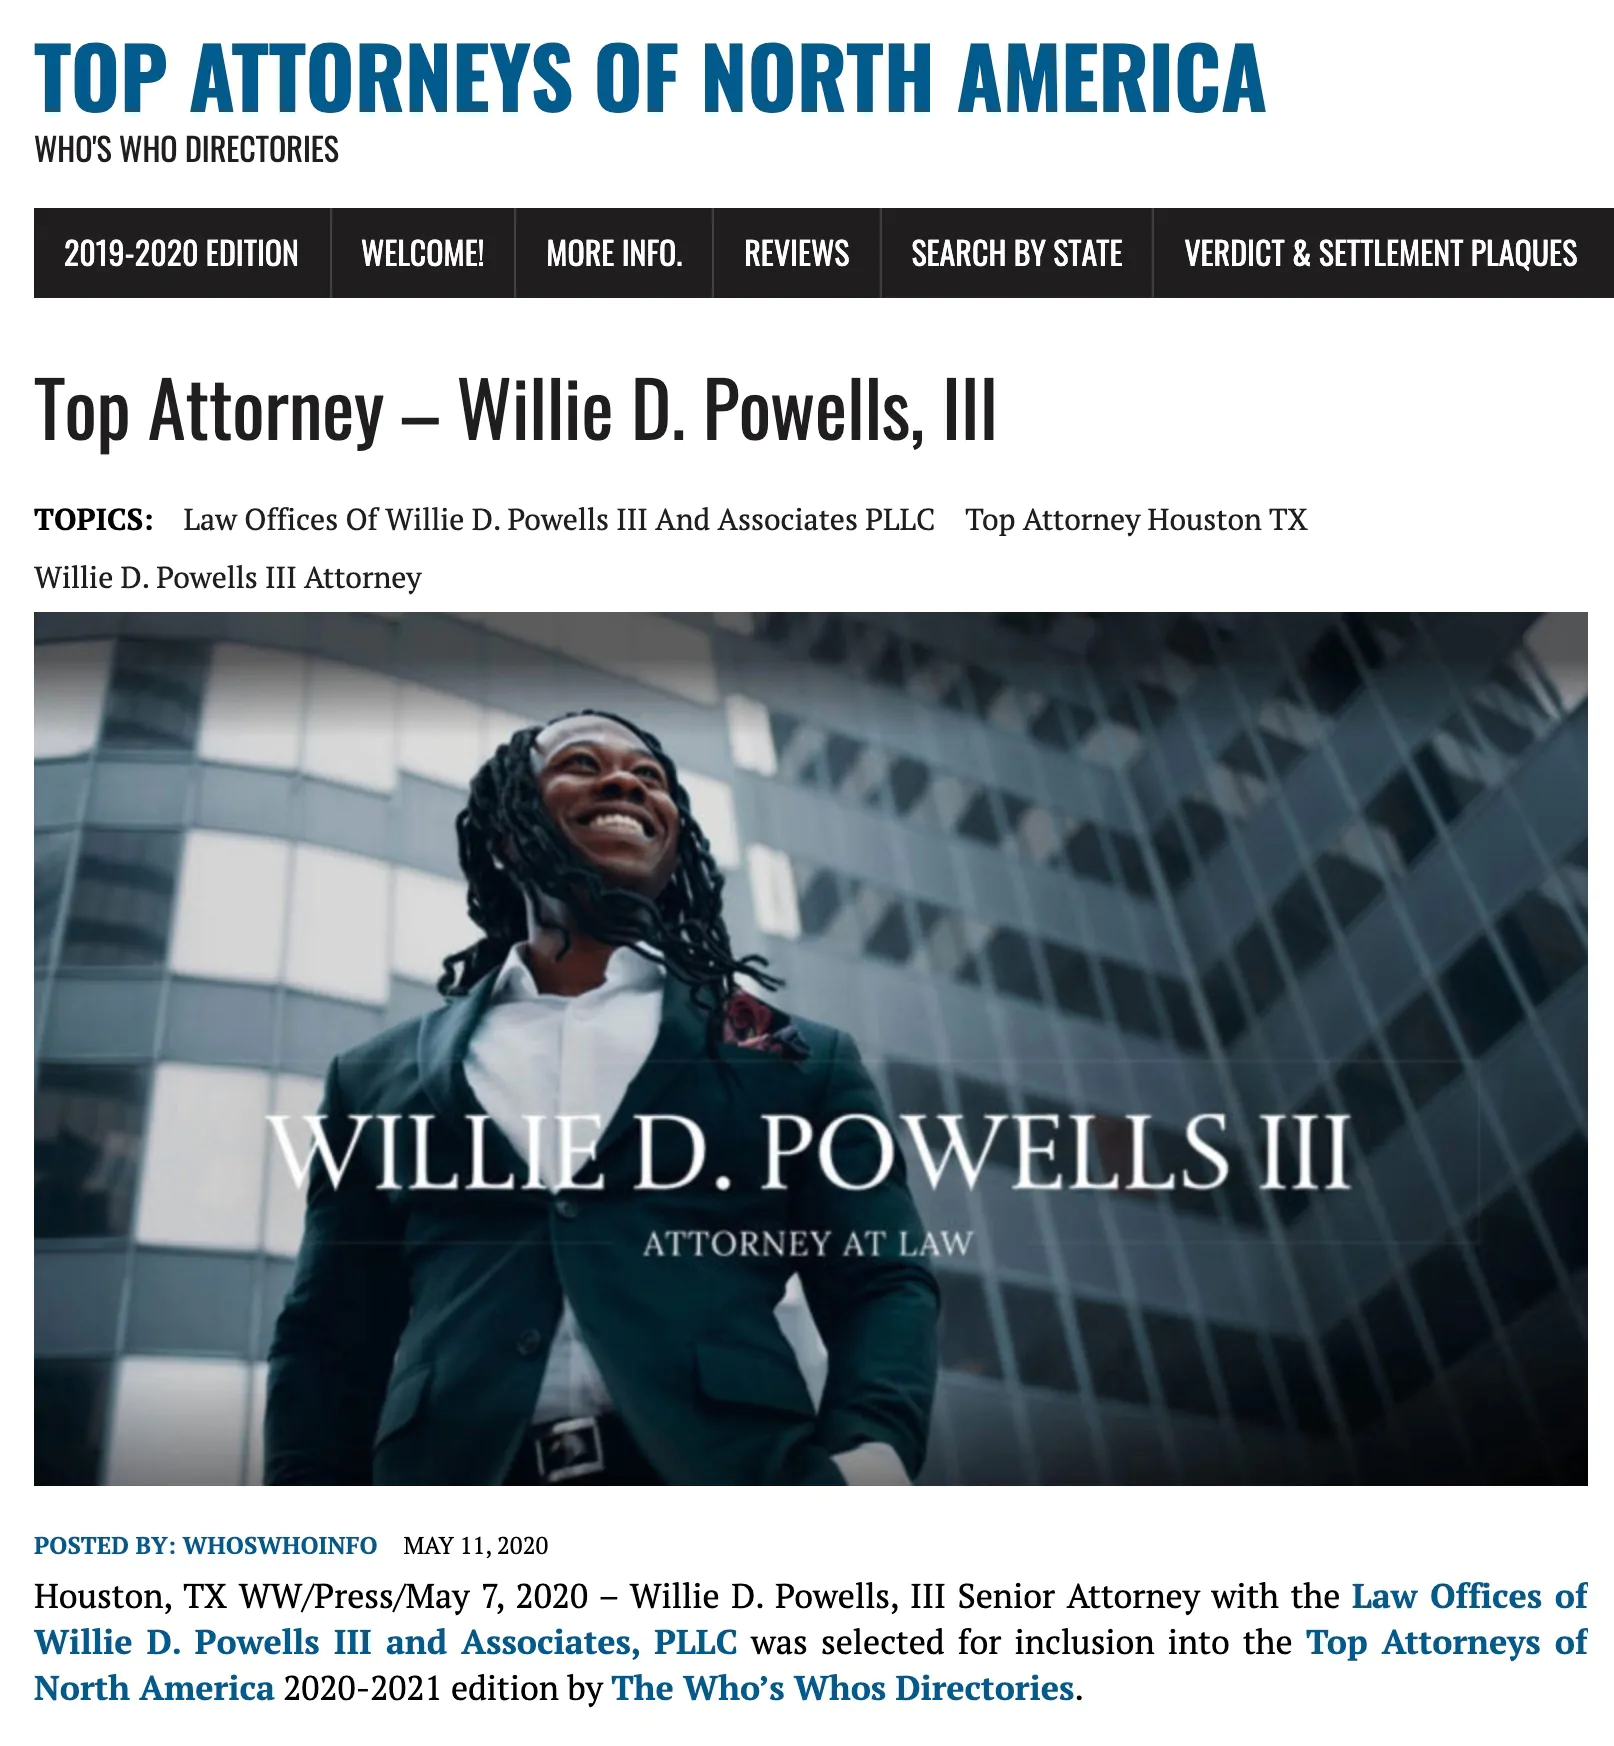 Top Attorney - Willie D. Powells, III